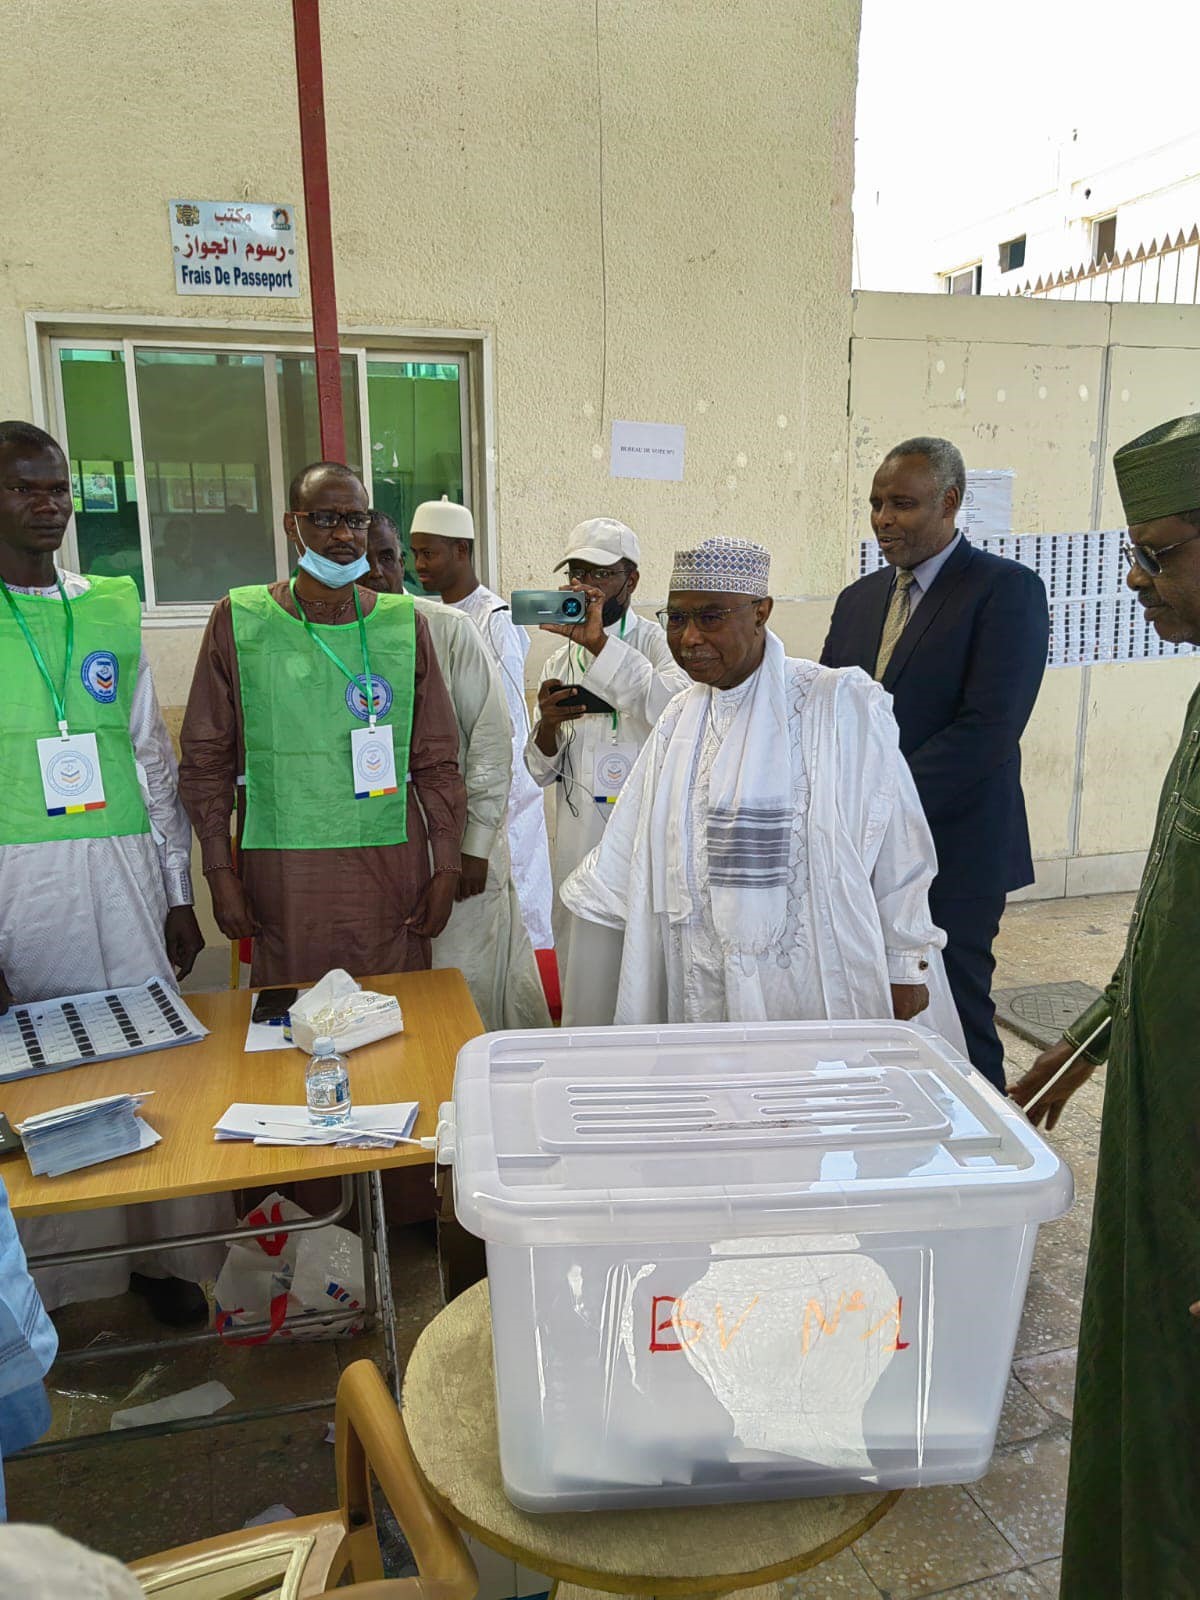 Le Référendum constitutionnel au Tchad : Les opérations du vote référendaire des Tchadiens résidents à Djeddah (Royaume d'Arabie Saoudite) se poursuivent dans de bonnes conditions